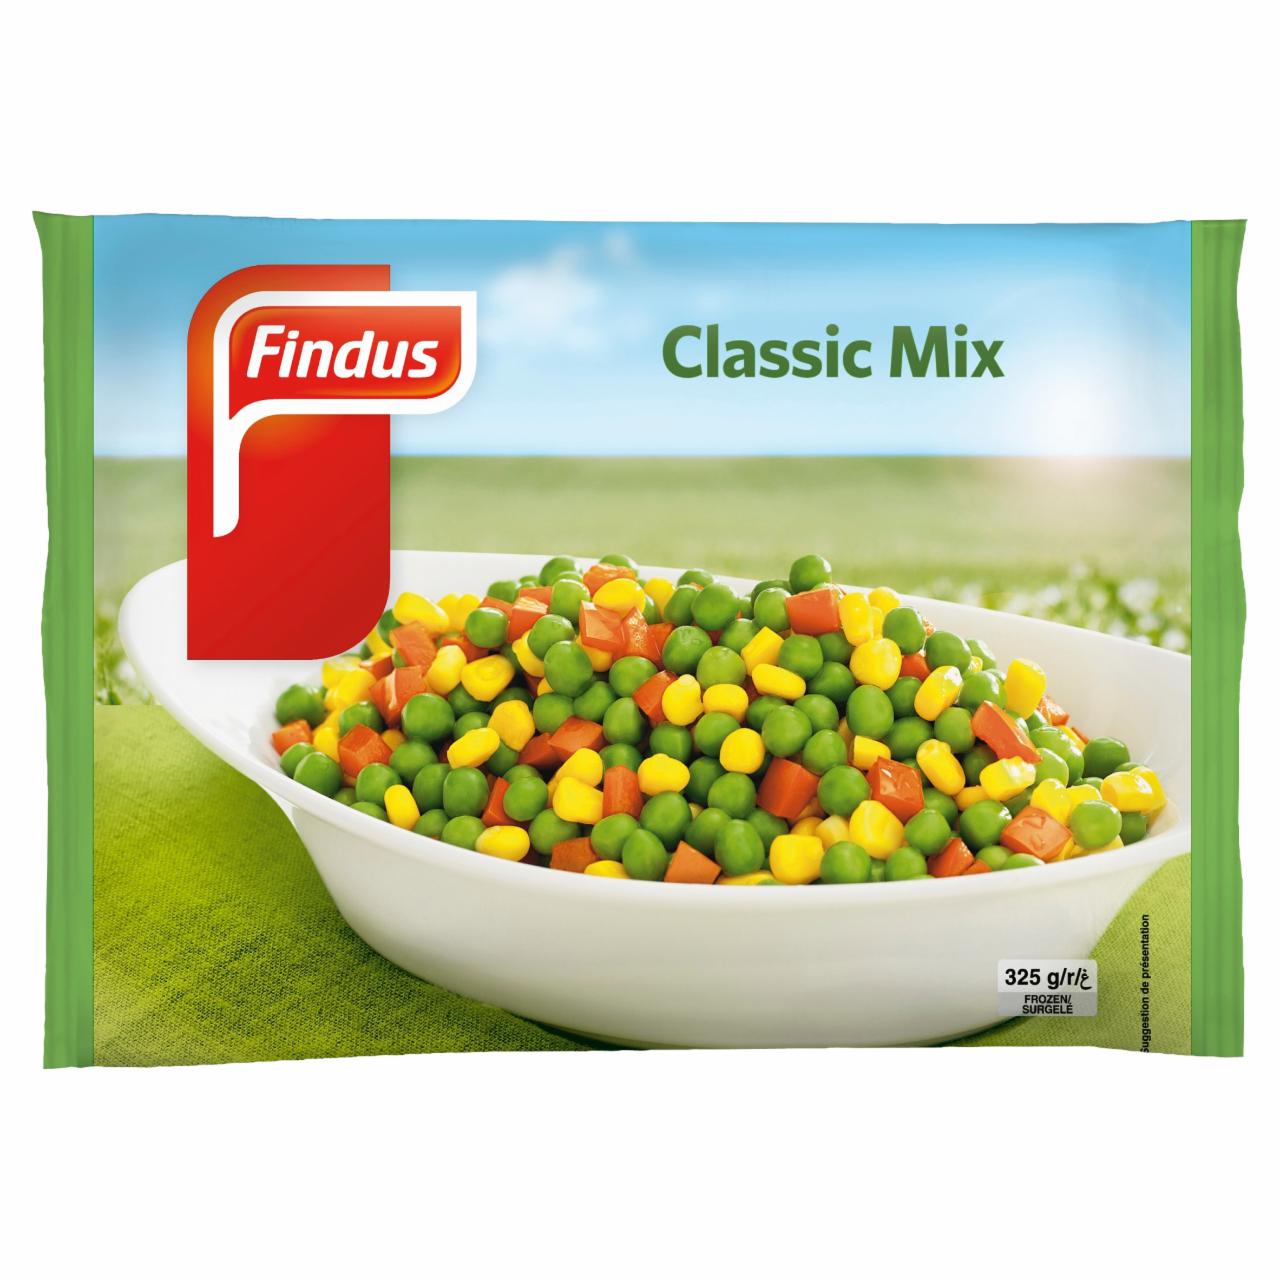 Képek - Findus Classic Mix előfőzött, gyorsfagyasztott zöldségkeverék 325 g